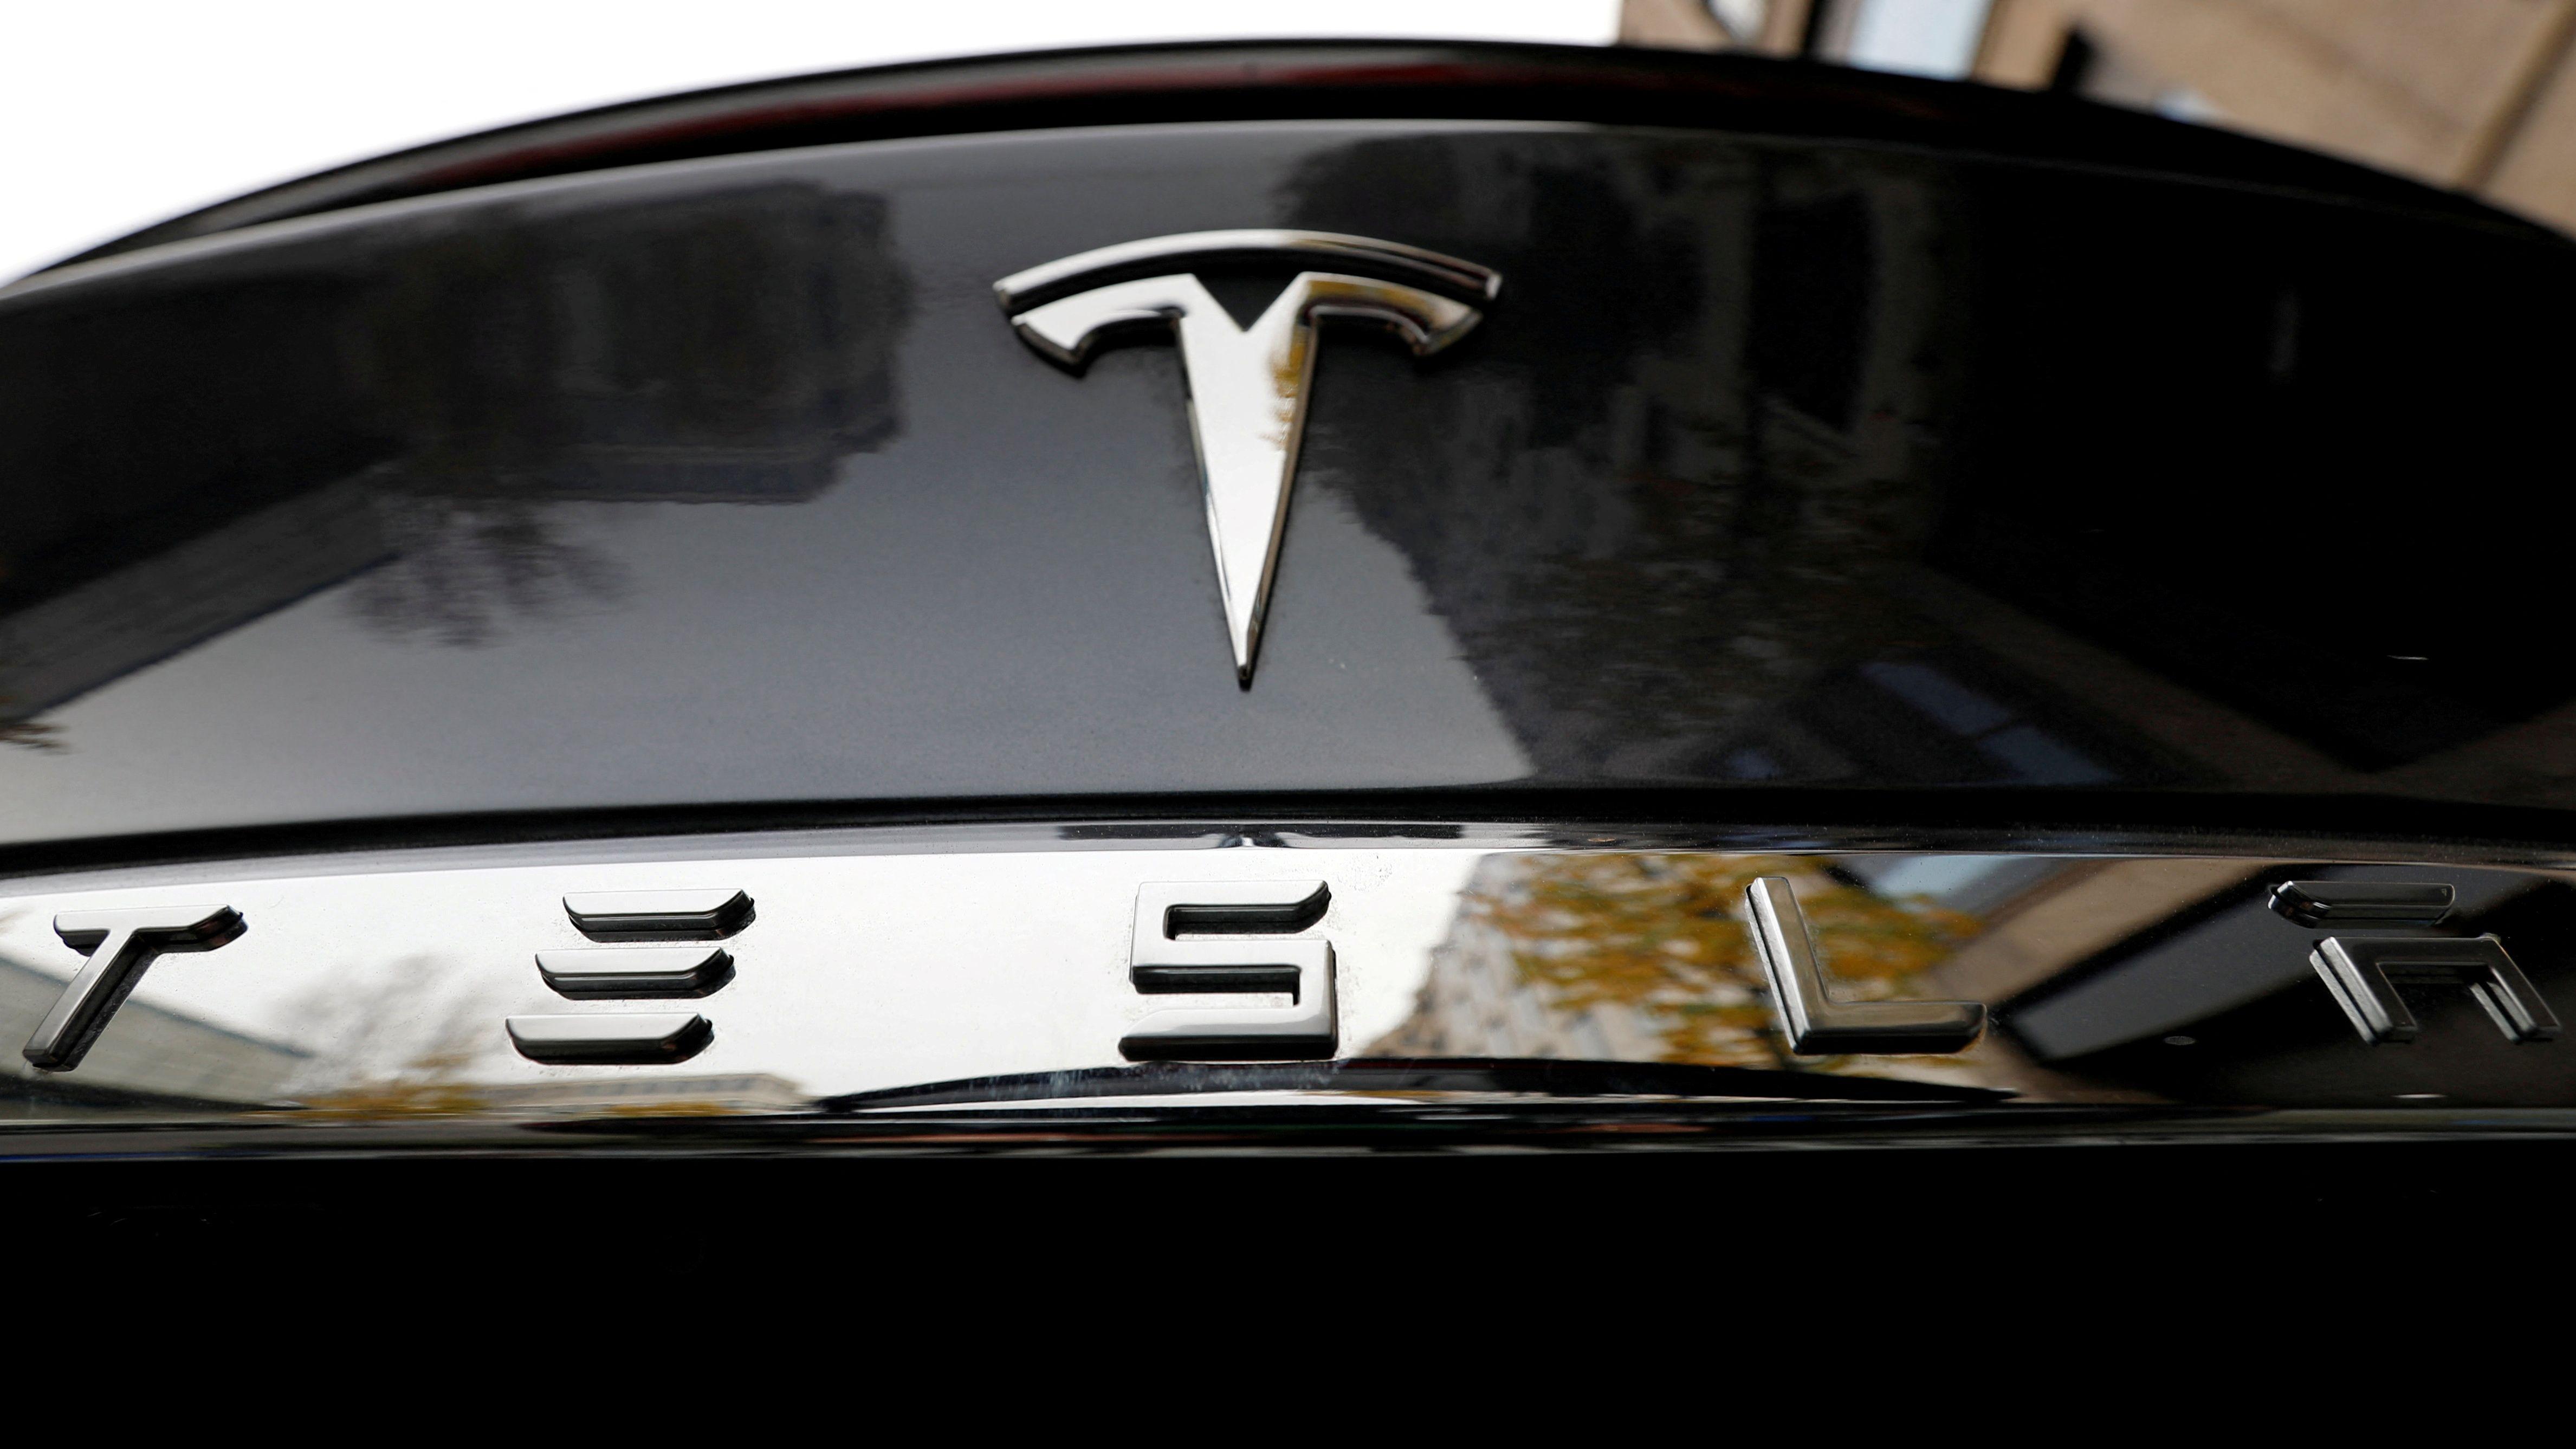 Tesla profits nosedive as more job cuts announced